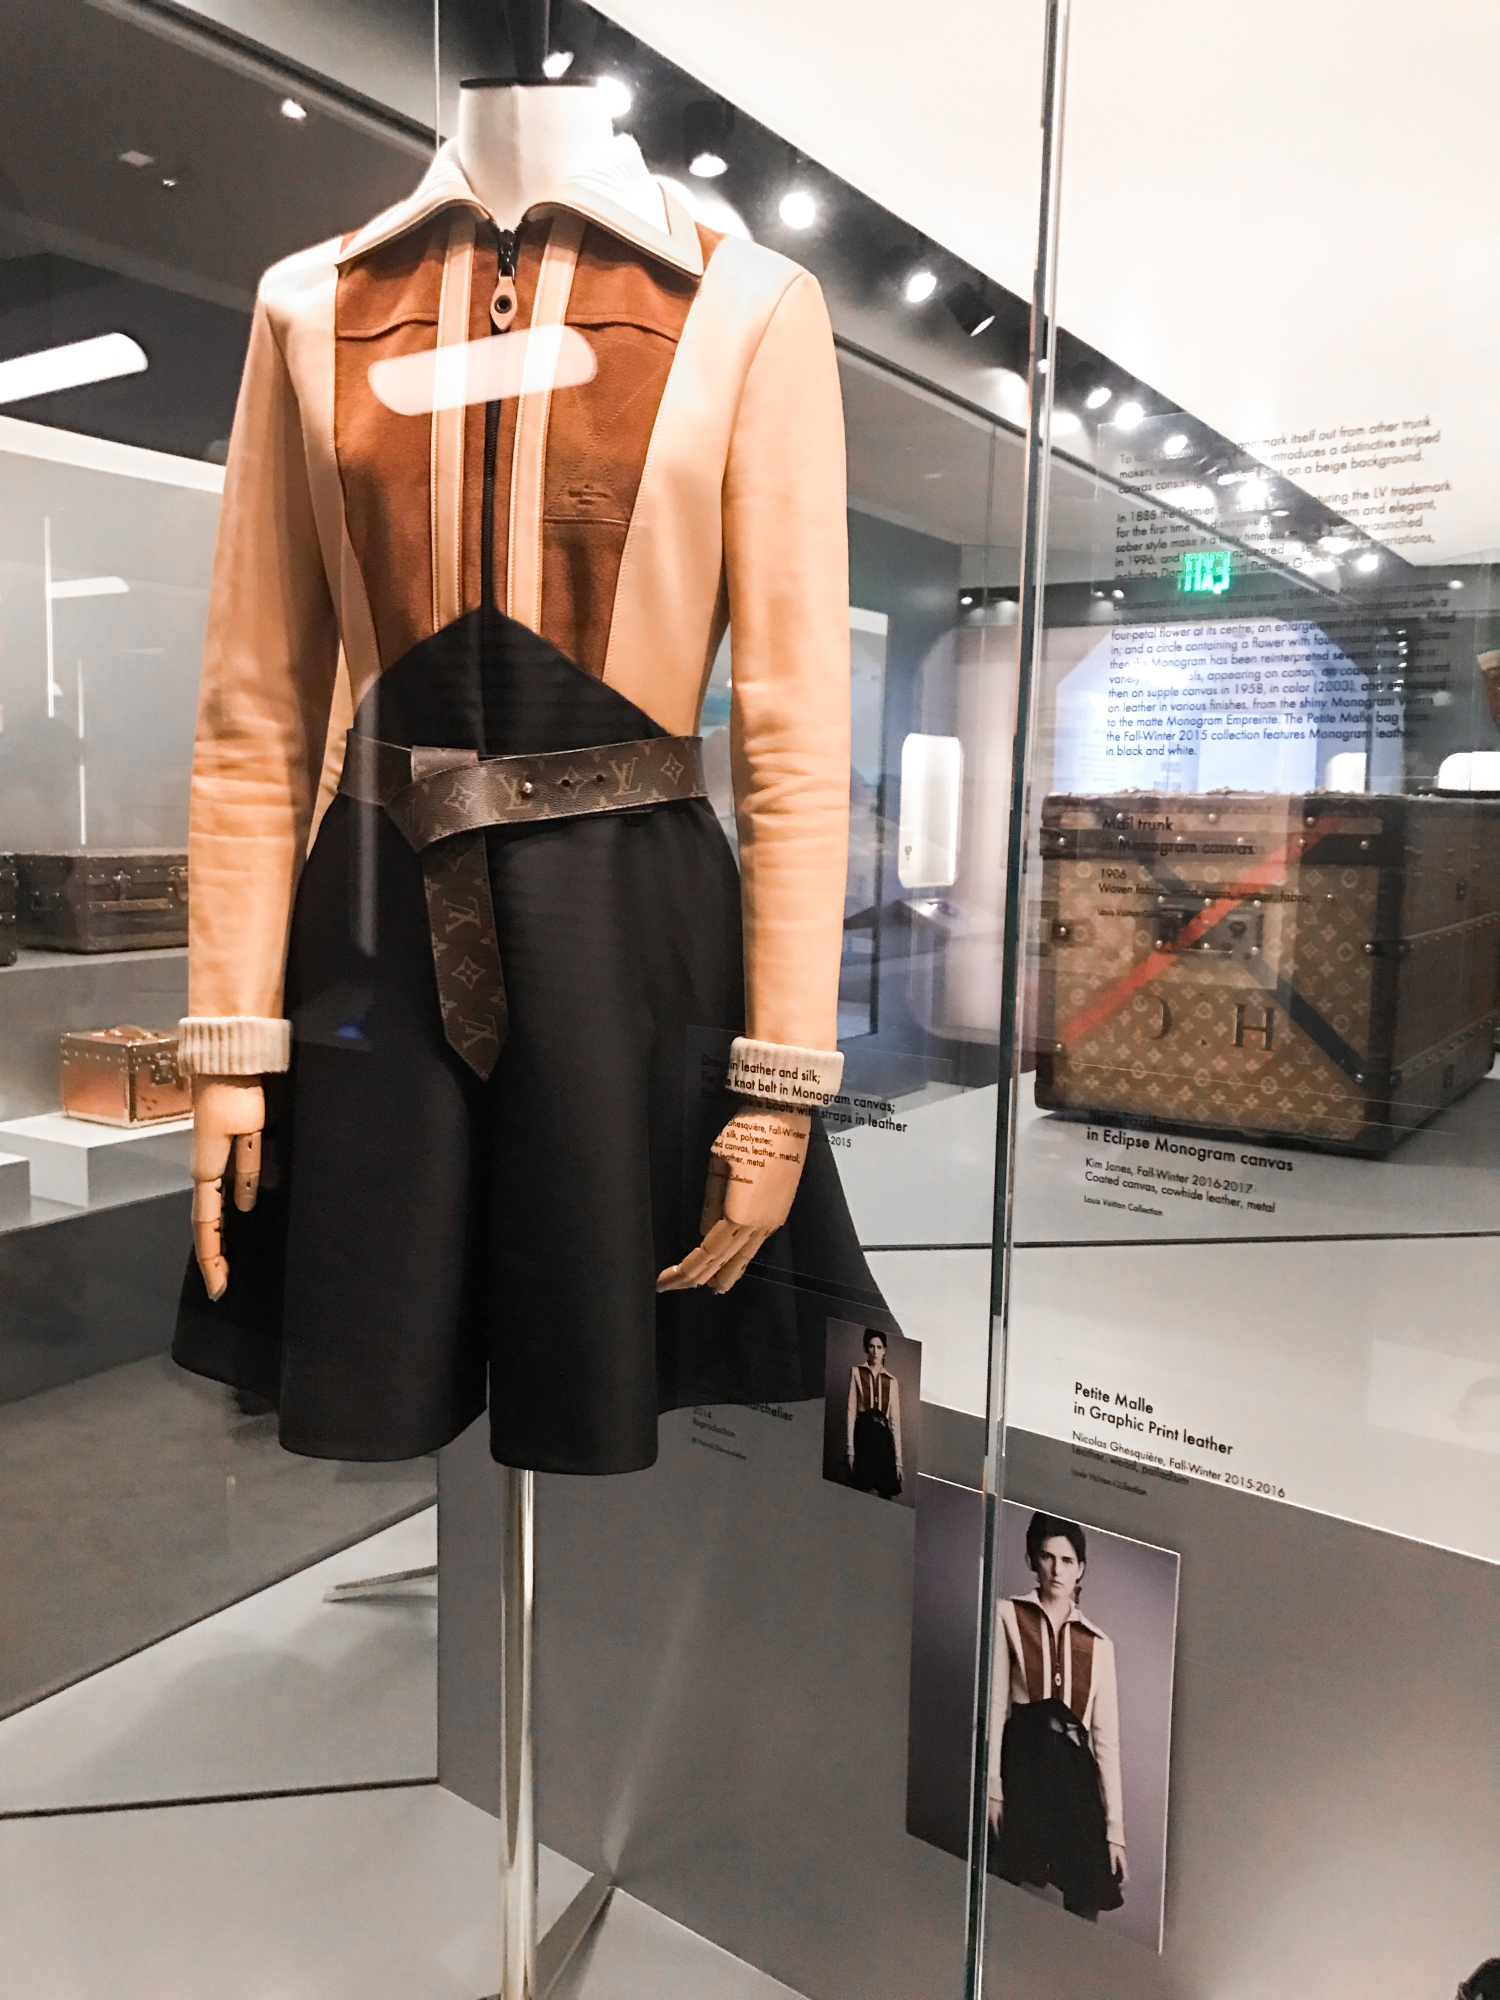 Ensembles and Exhibitions: Louis Vuitton’s Time Capsule Exhibition in LA